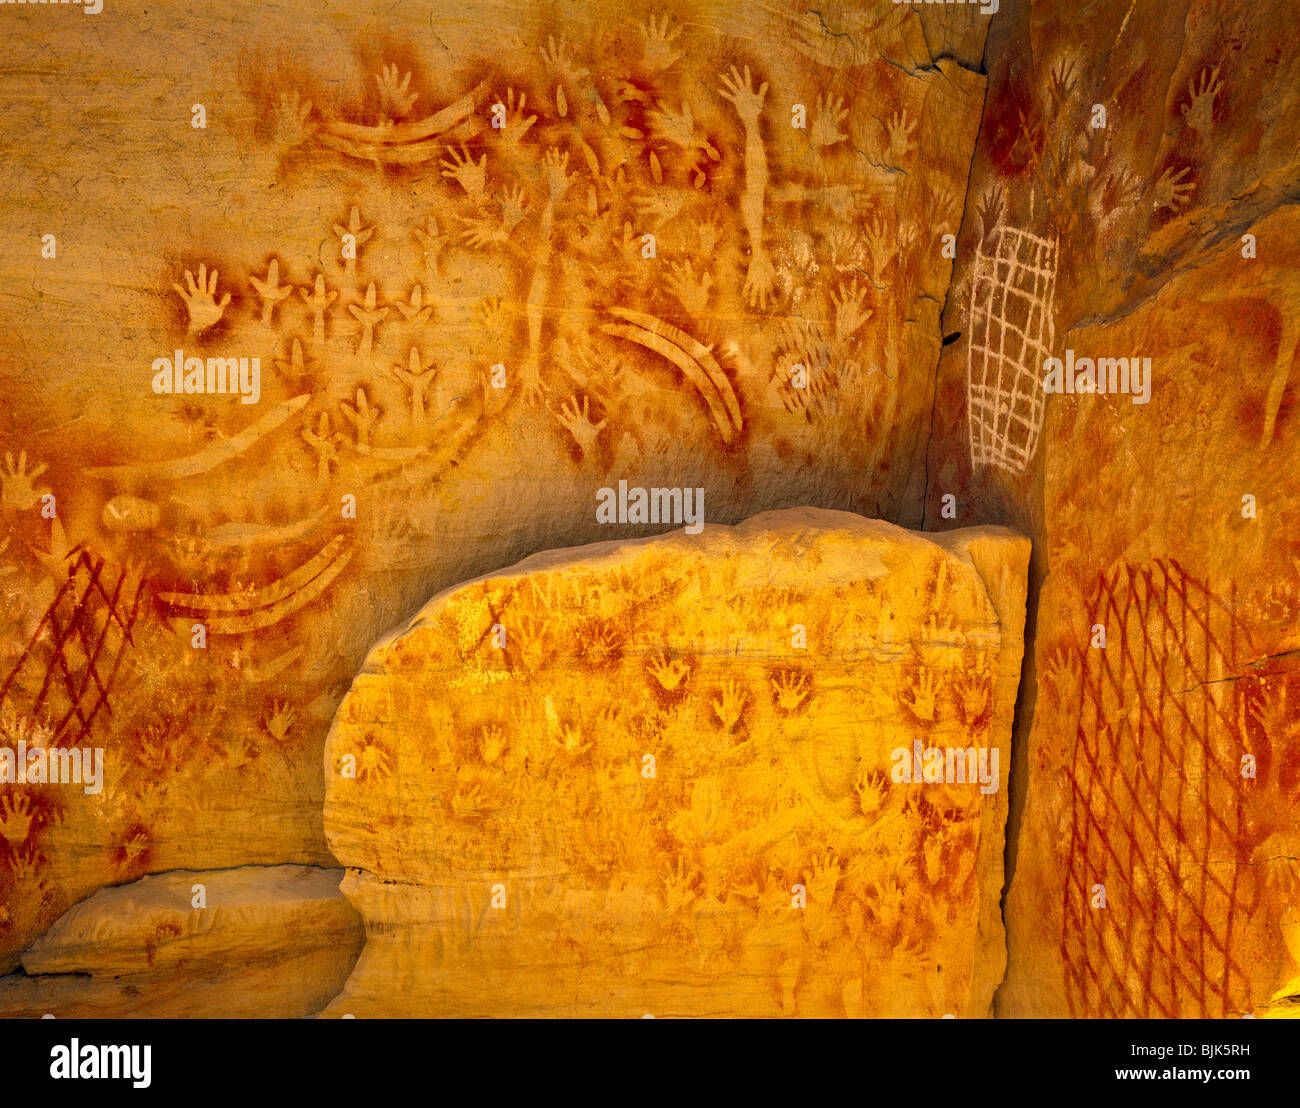 Arte rupestre degli Aborigeni presso la Galleria d'arte, Carnarvon National Park, Queensland, Australia, antiche pitture rupestri, Carnarvon Gorge Foto Stock